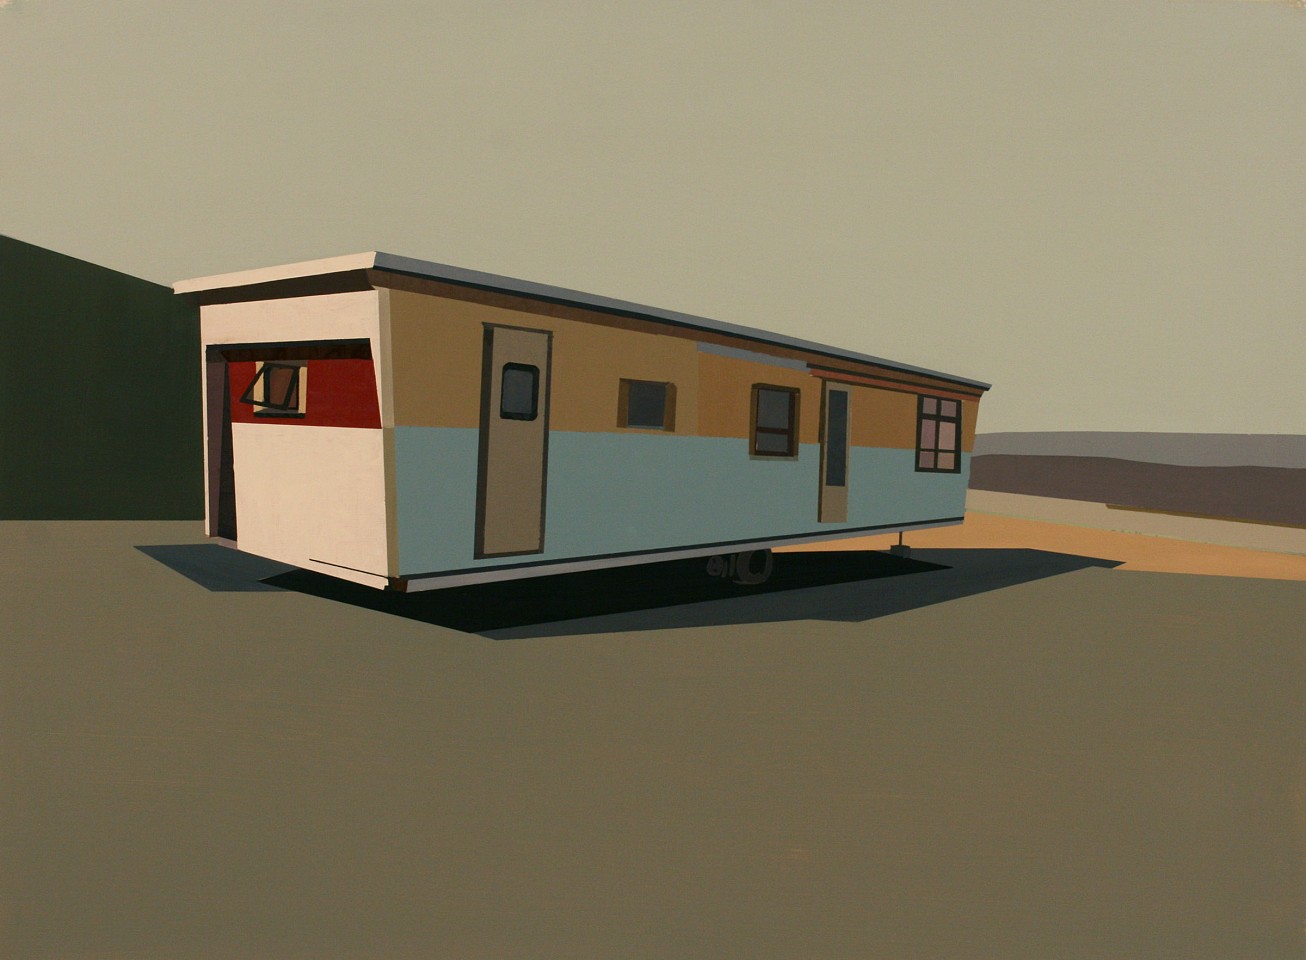 Mark Bradley-Shoup
Dwelling in Phlox Blue Sky, 2011
oil on paper, 29 1/2 x 22 in.